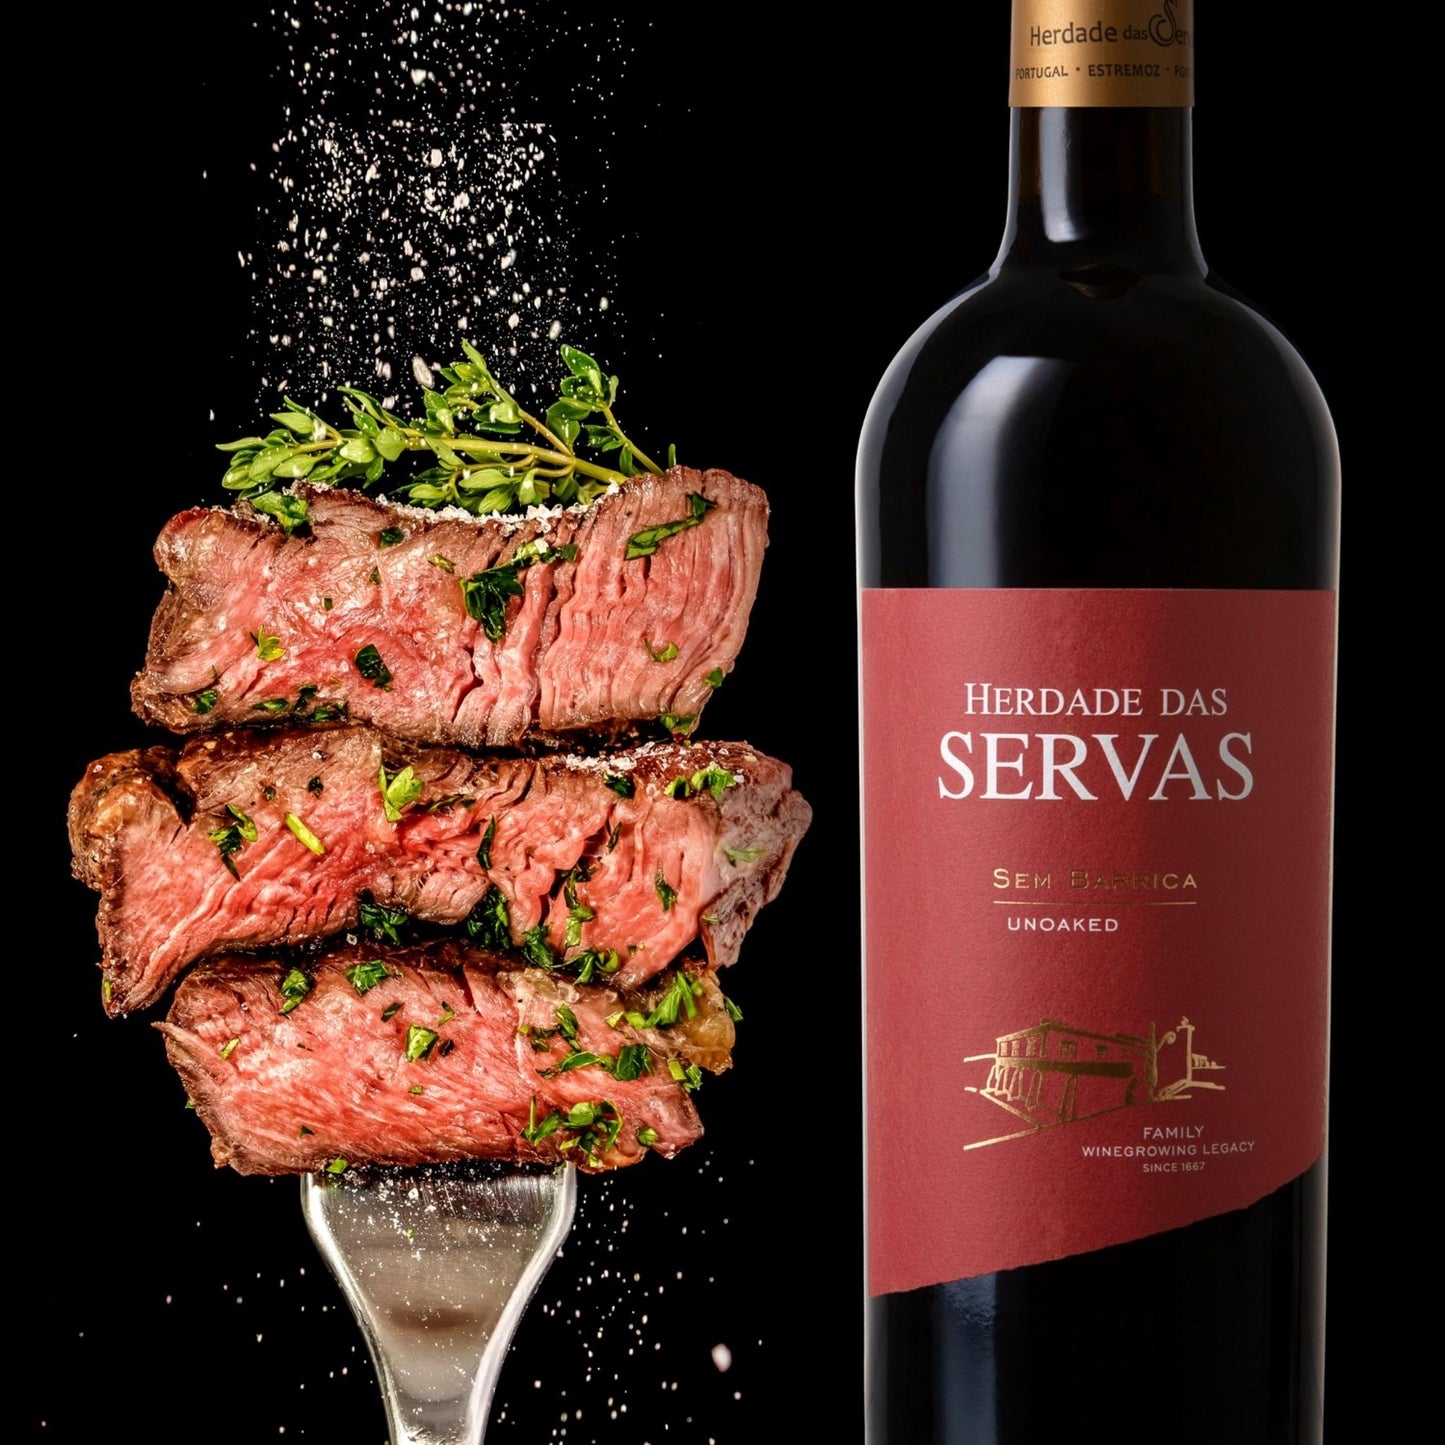 
                  
                    SEM BARRICA - UNOACKED Rotwein vom Weingut Herdade das Servas aus der Region Estremoz – Alentejo/Portugal. Flasche Wein mit rotem Etikett, daneben gebratenes Steak auf einer Gabel mit Kräutern garniert.
                  
                